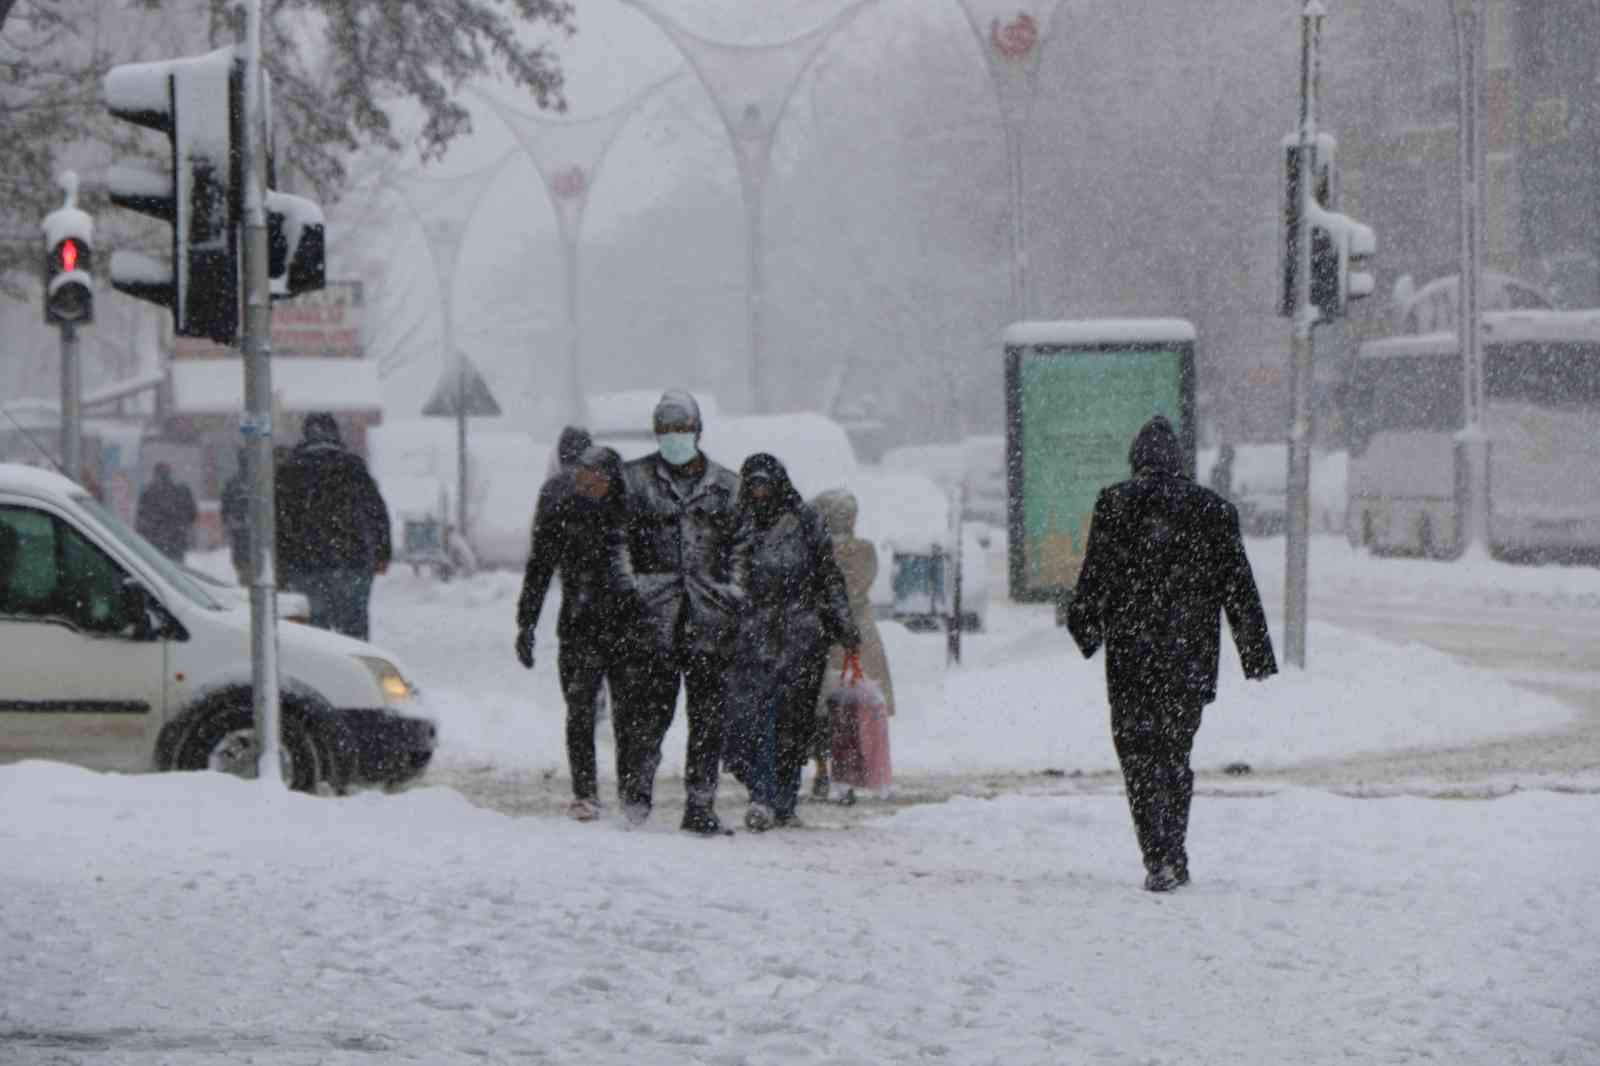 Erzincan’da yoğun kar yağış bekleniyor! #erzincan